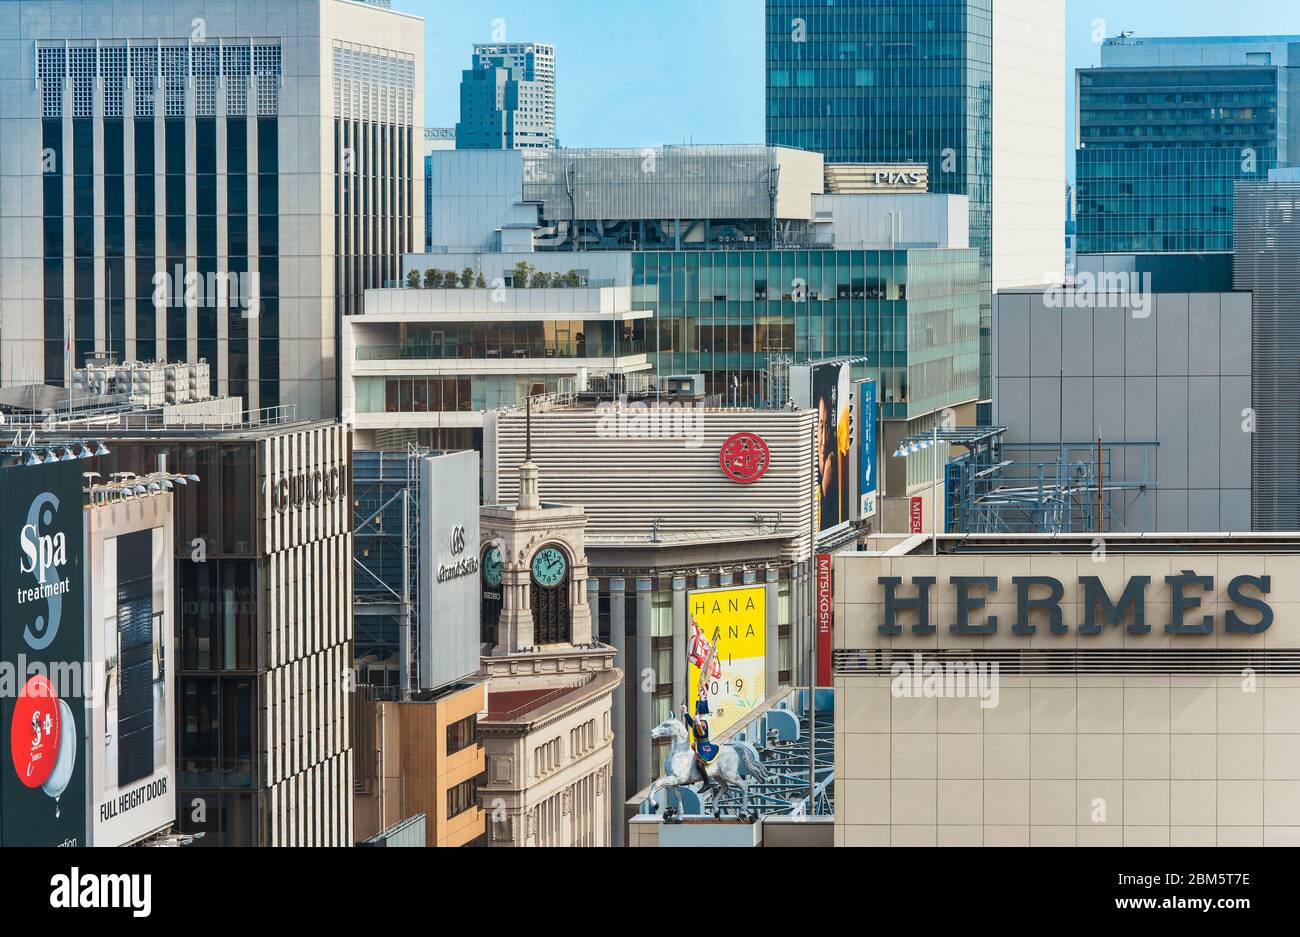 Hochwinkelansicht von Gebäuden und Wolkenkratzern im Tokioter Ginza-Viertel mit der berühmten Wakō-Uhr in der Mitte und Hermes-Reiter im Vordergrund Stockfoto